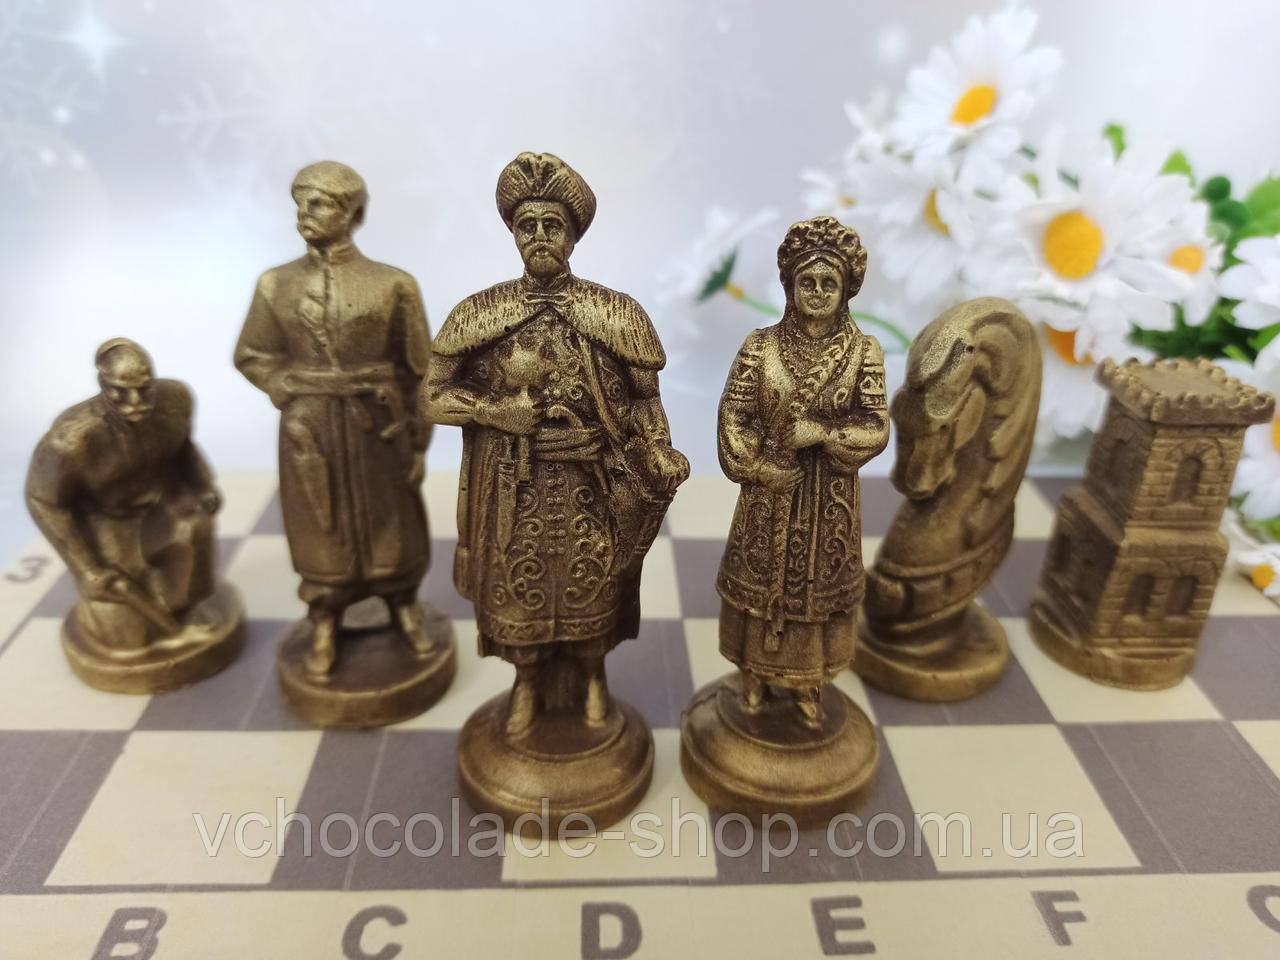 Українські сувенірні шоколадні шахи Казаки 32 фігурки в наборі оригінальний стильний подарунок